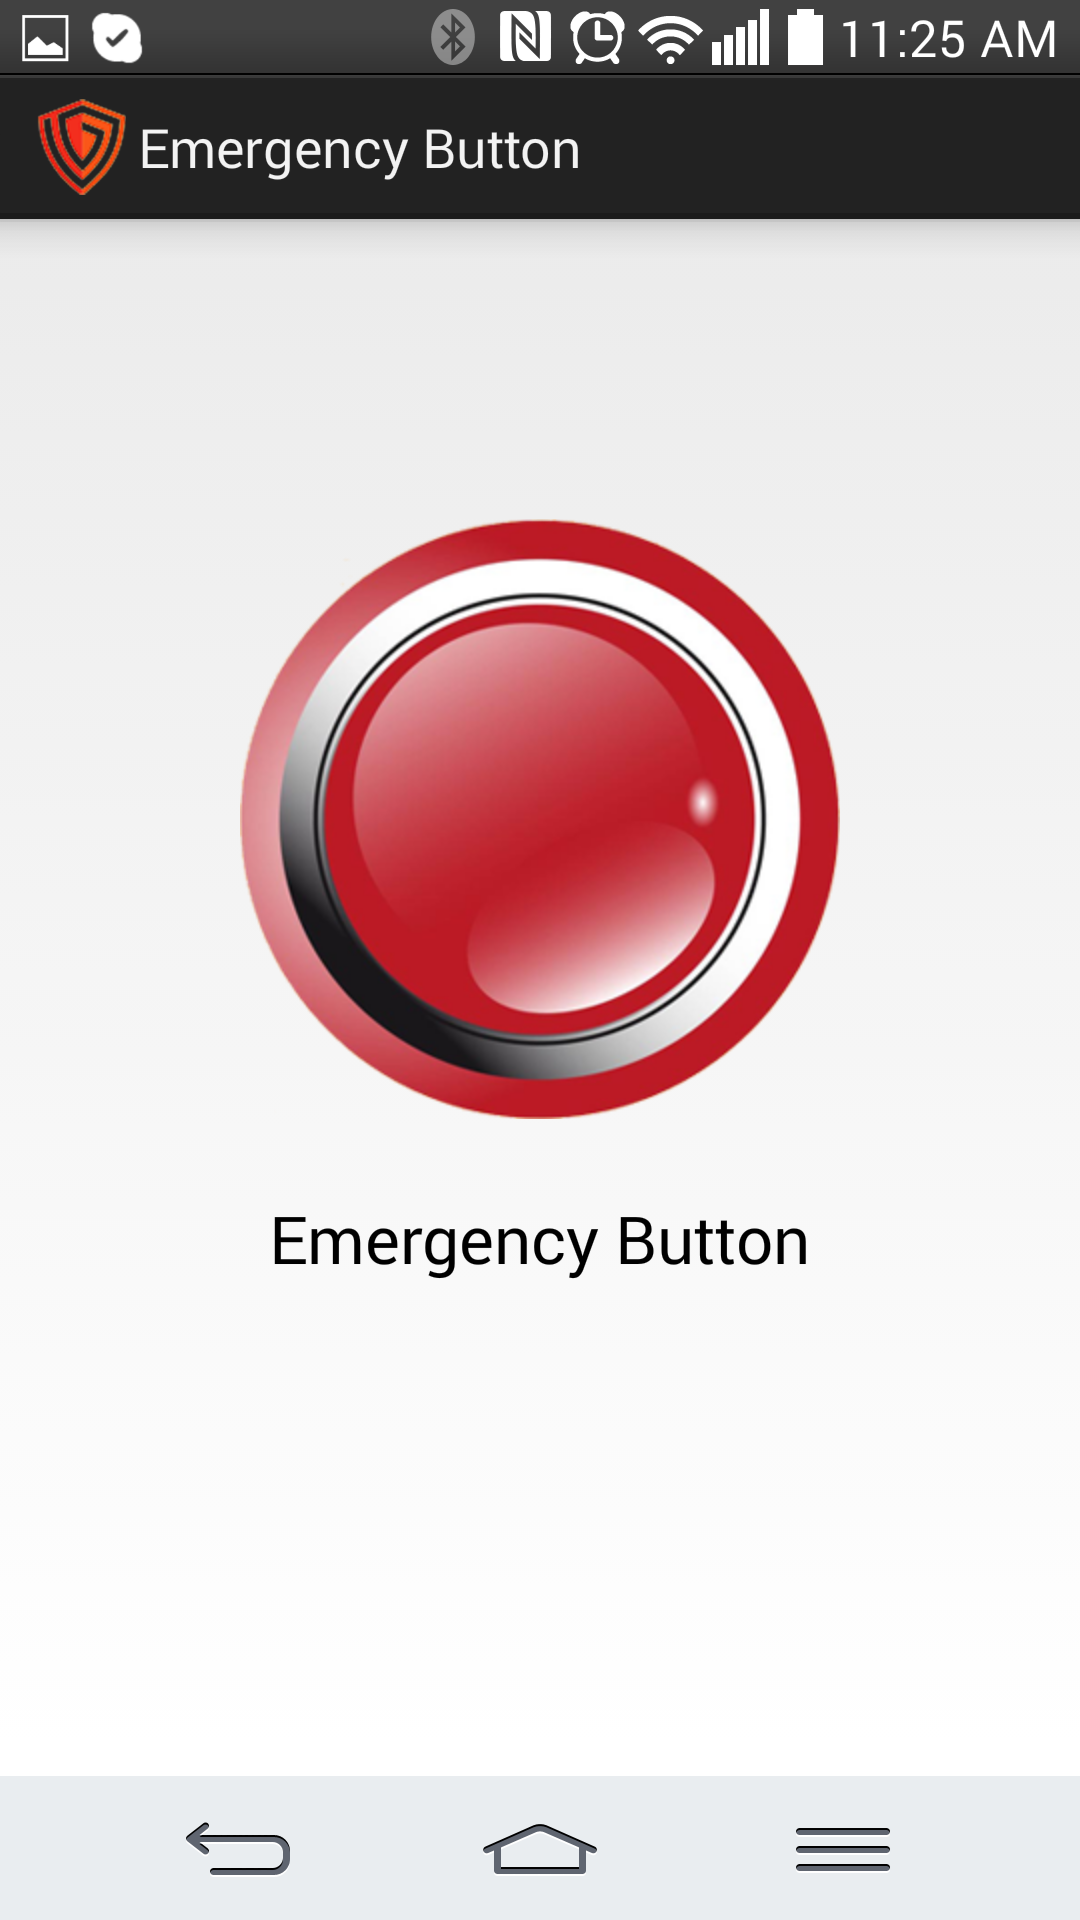 Press Emergency Button